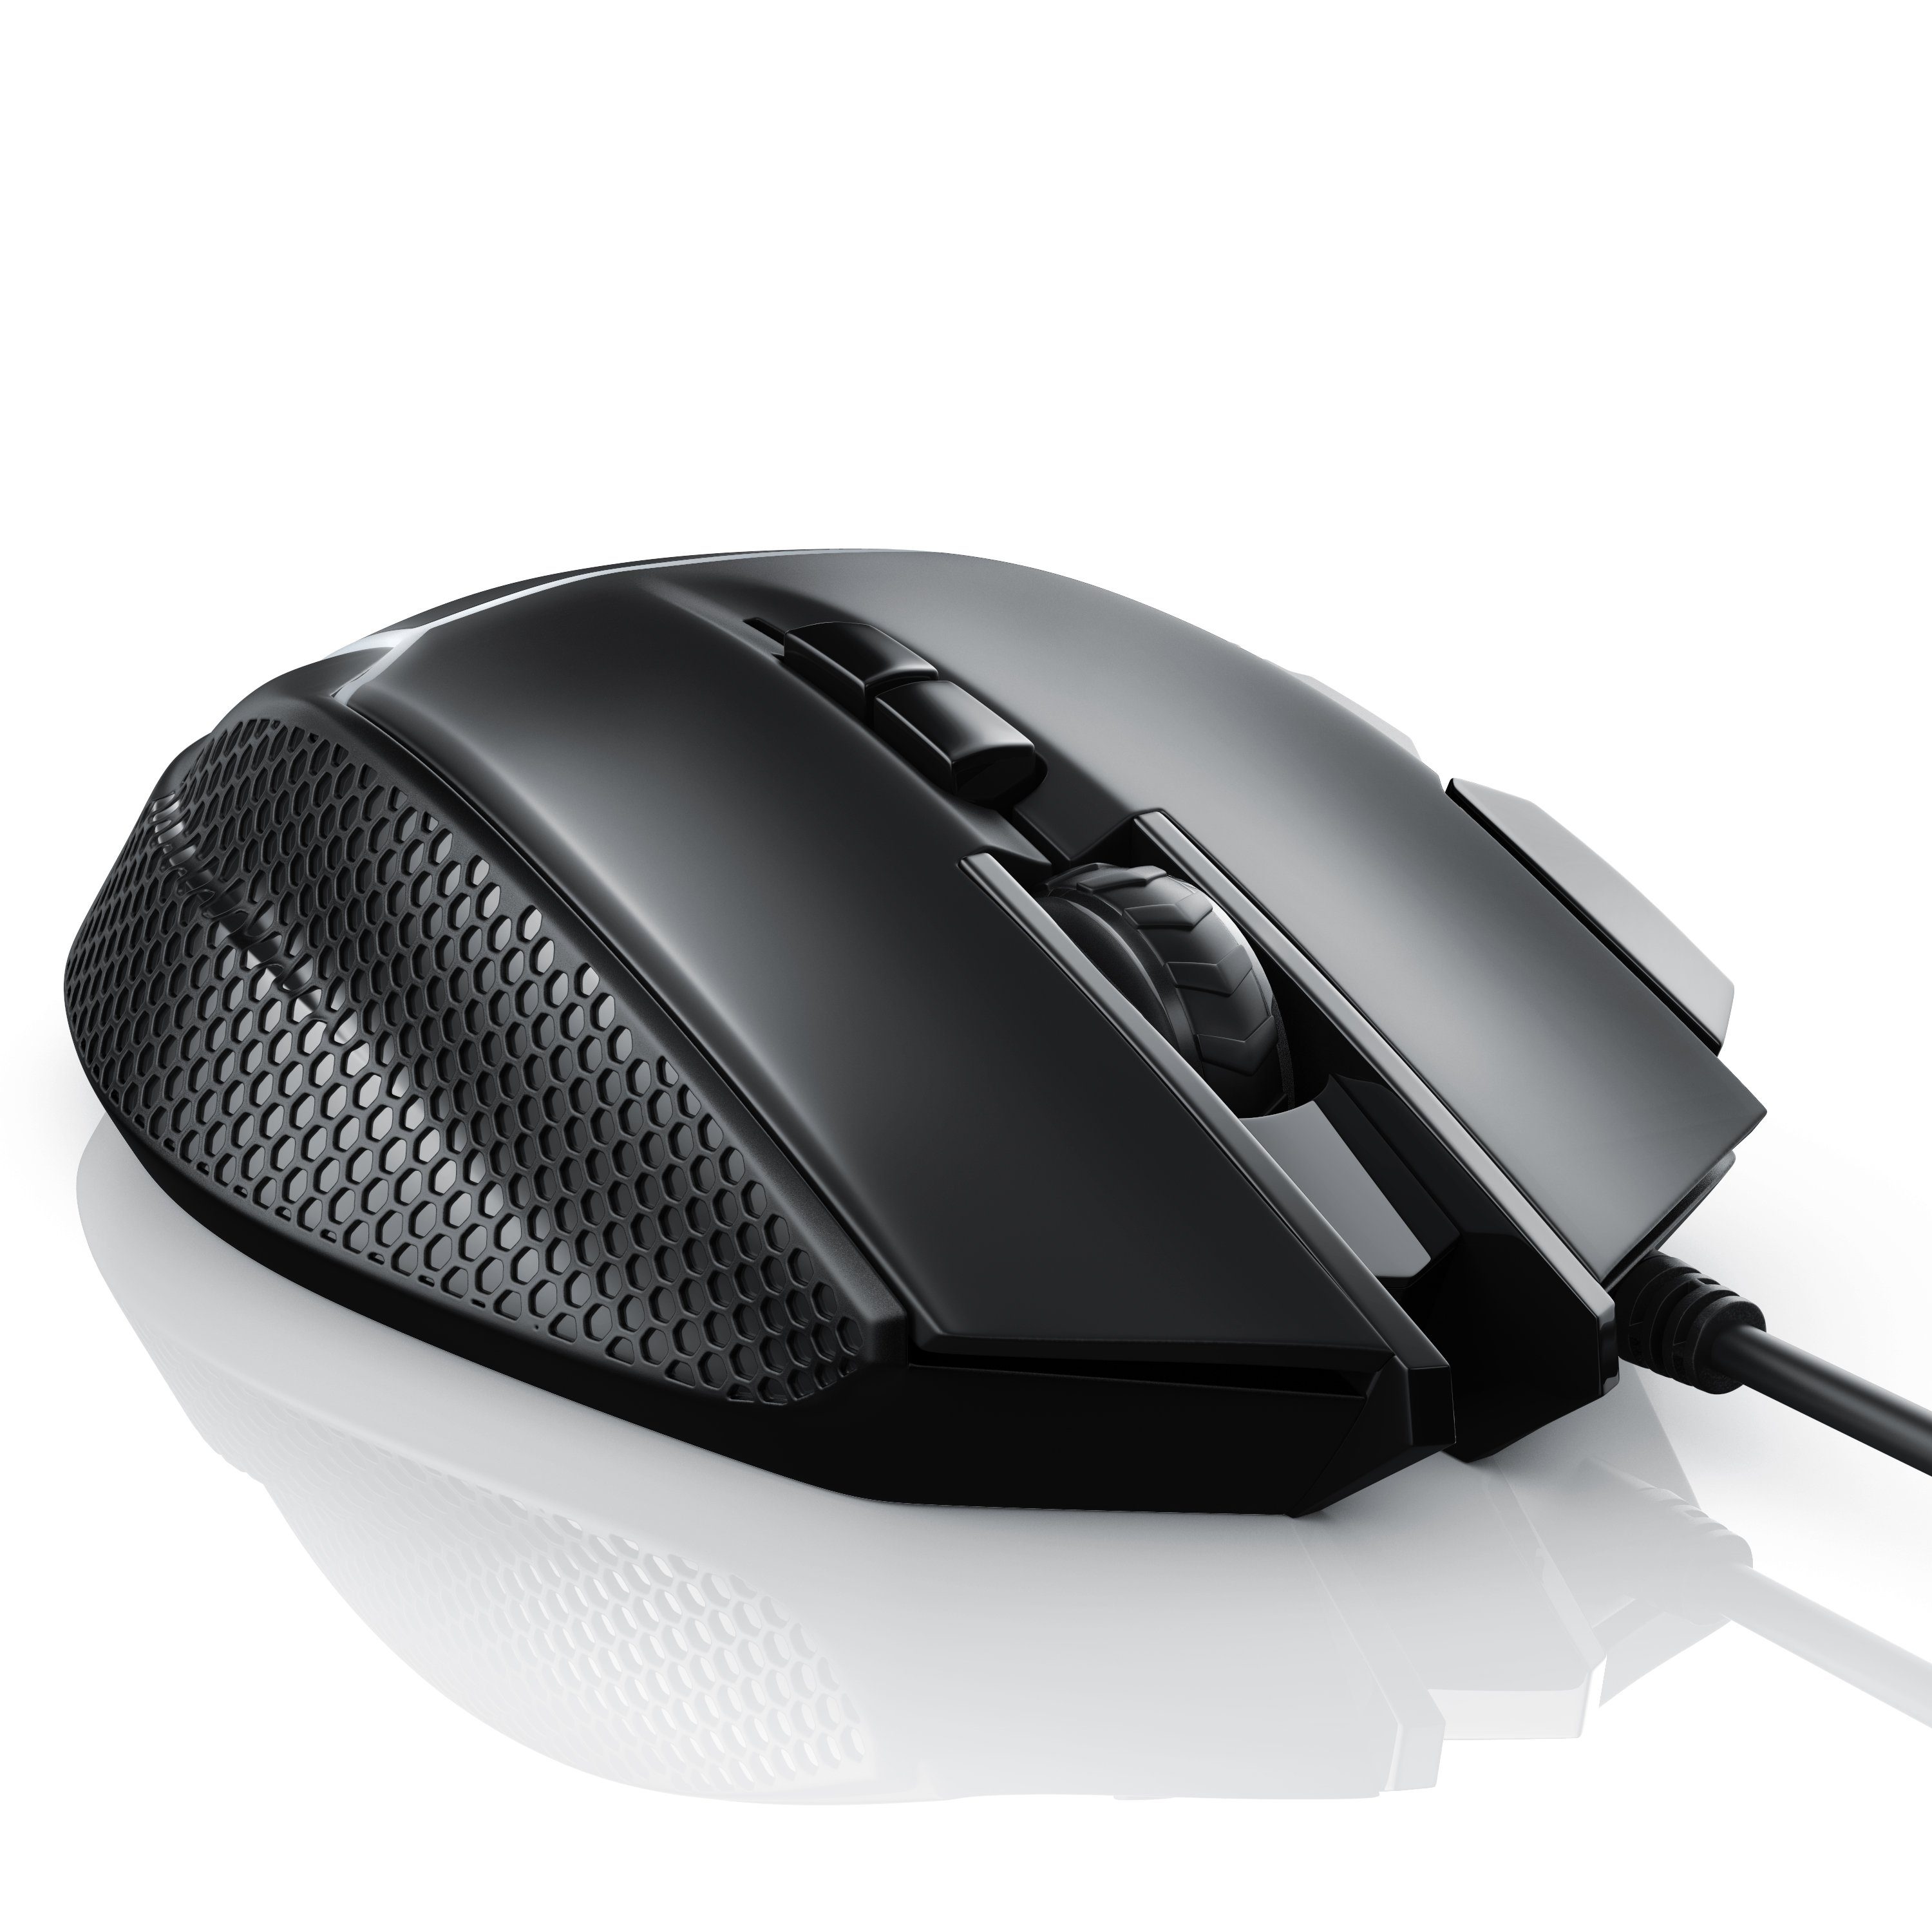 CSL Gewichten) 500 Abtastrate Mouse (kabelgebunden, dpi, dpi, inkl. Gaming-Maus wählbar, 3200 ergonomisch,